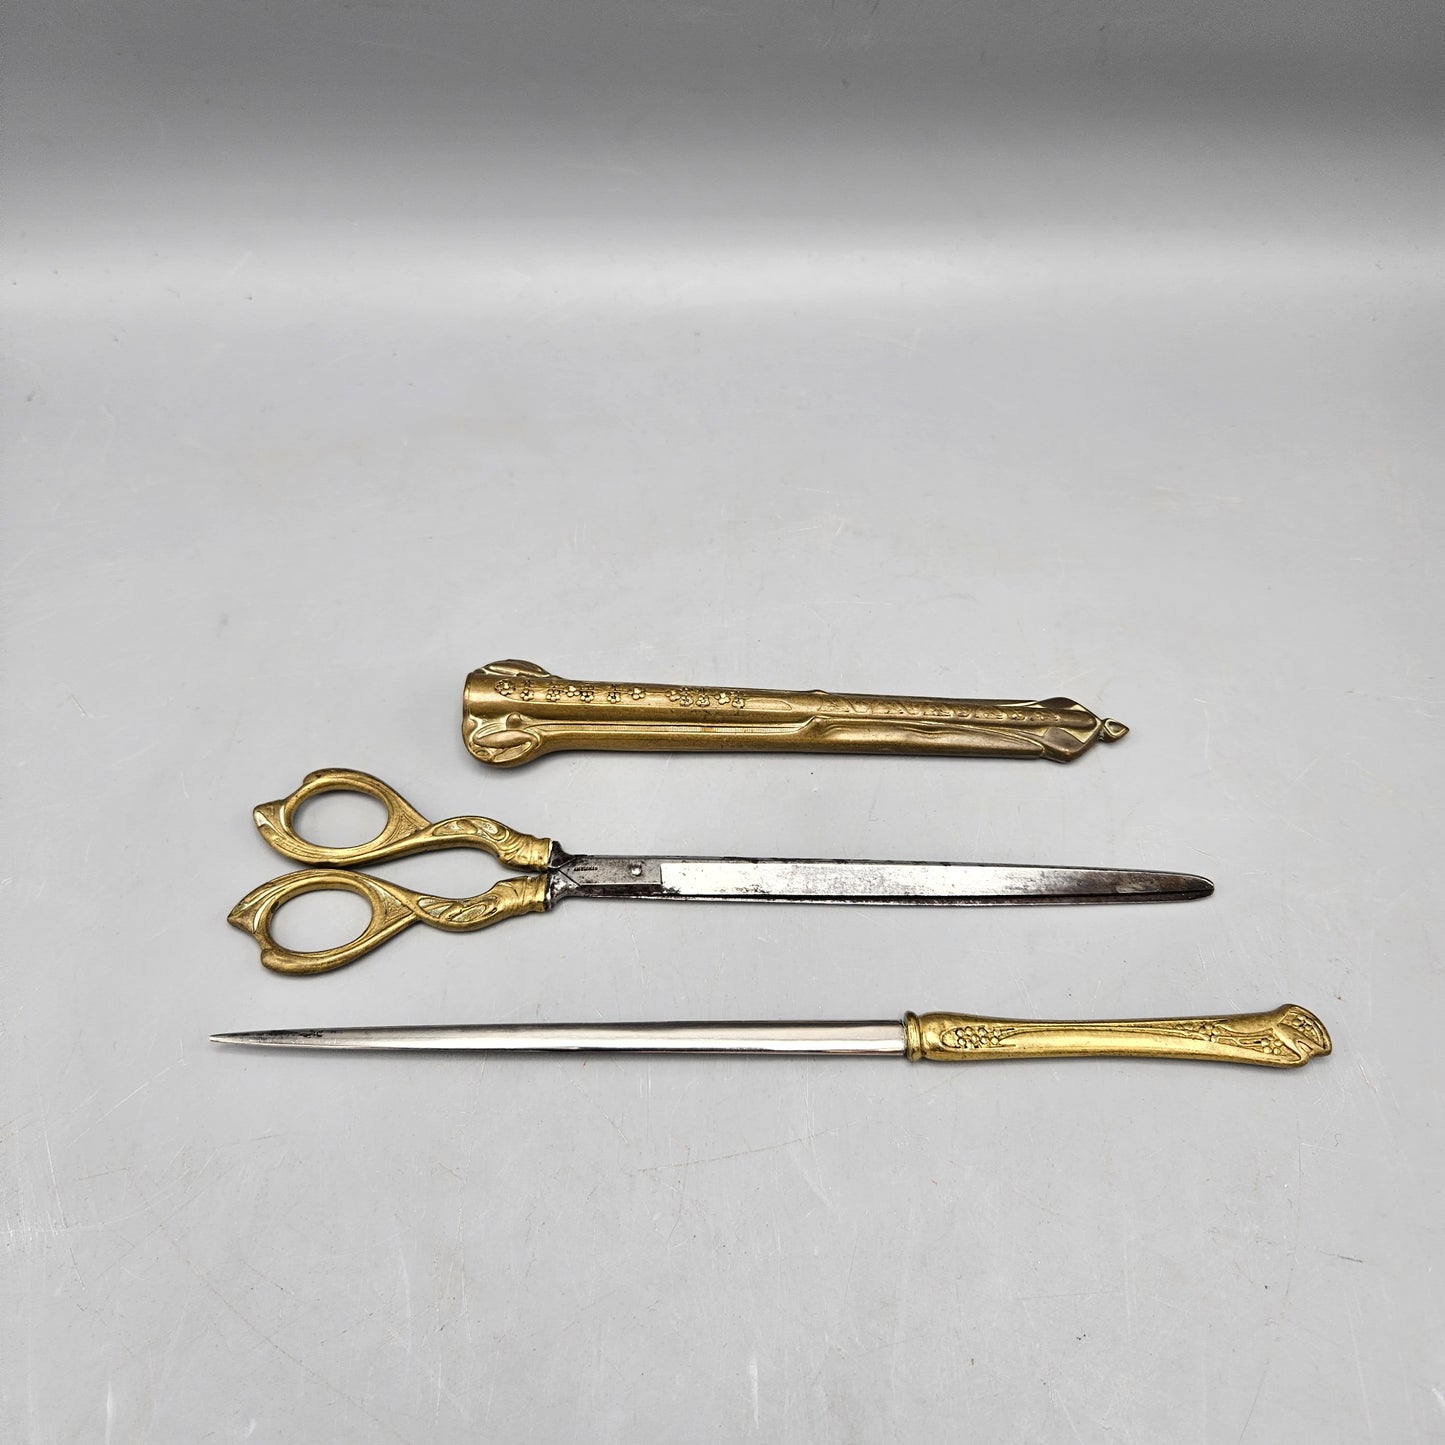 10486 - Desk Set - Paper Scissors + Letter Opener - Gold Collection